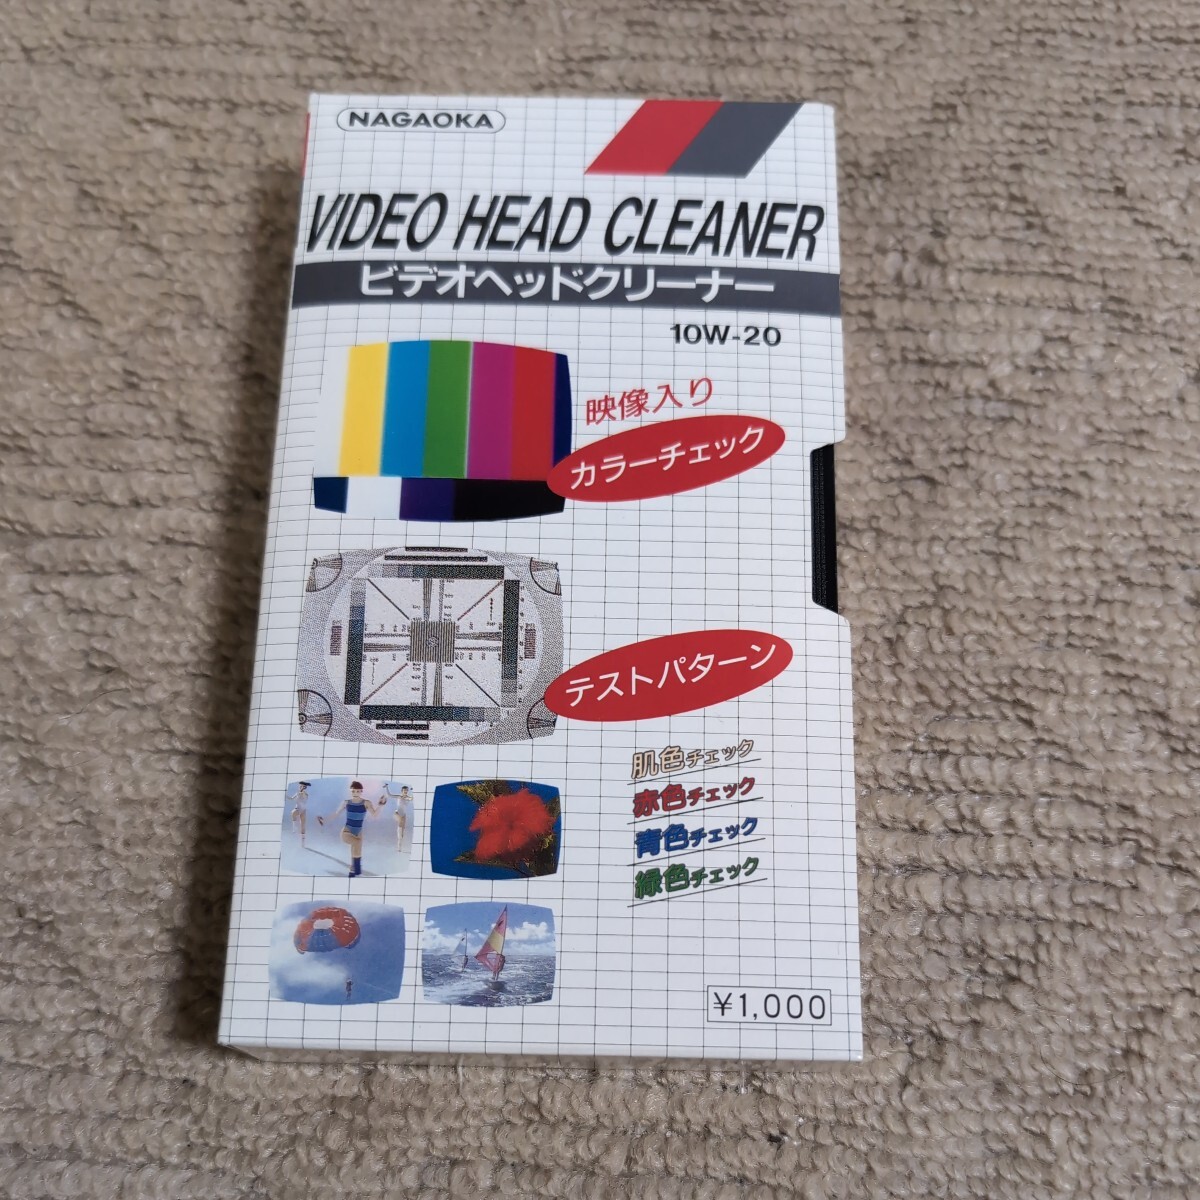 NAGAOKA VIDEO HEAD CLEANER video head cleaner 